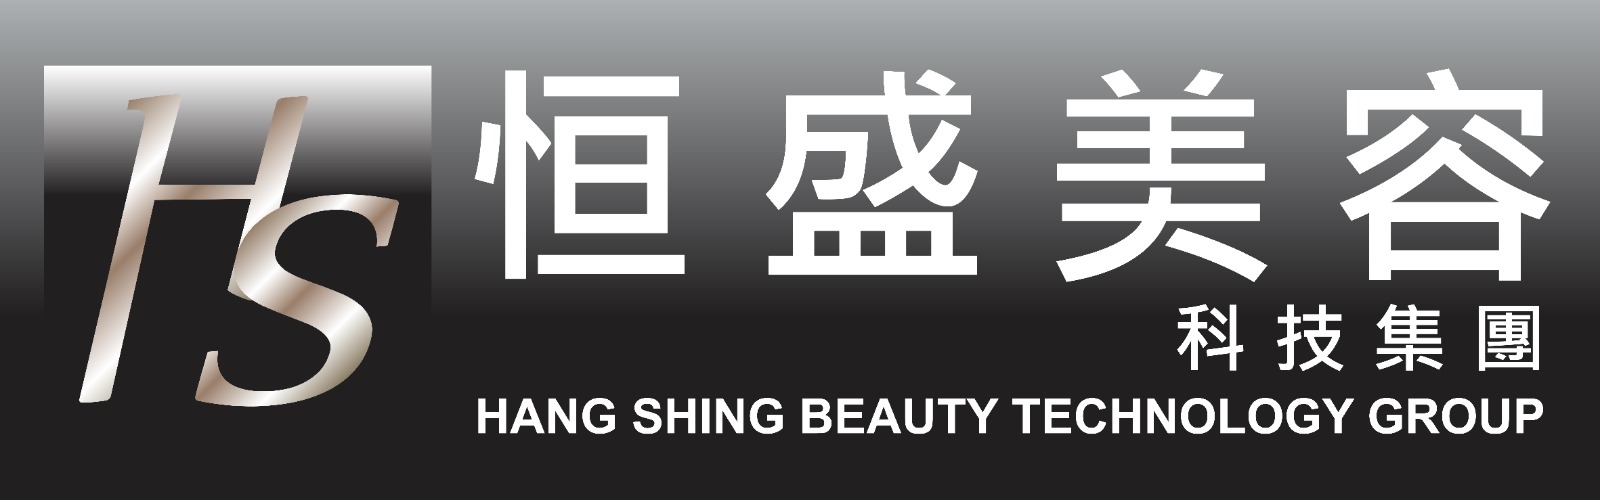 Hang Shing Beauty Technology Group 恒盛美容科技集團 